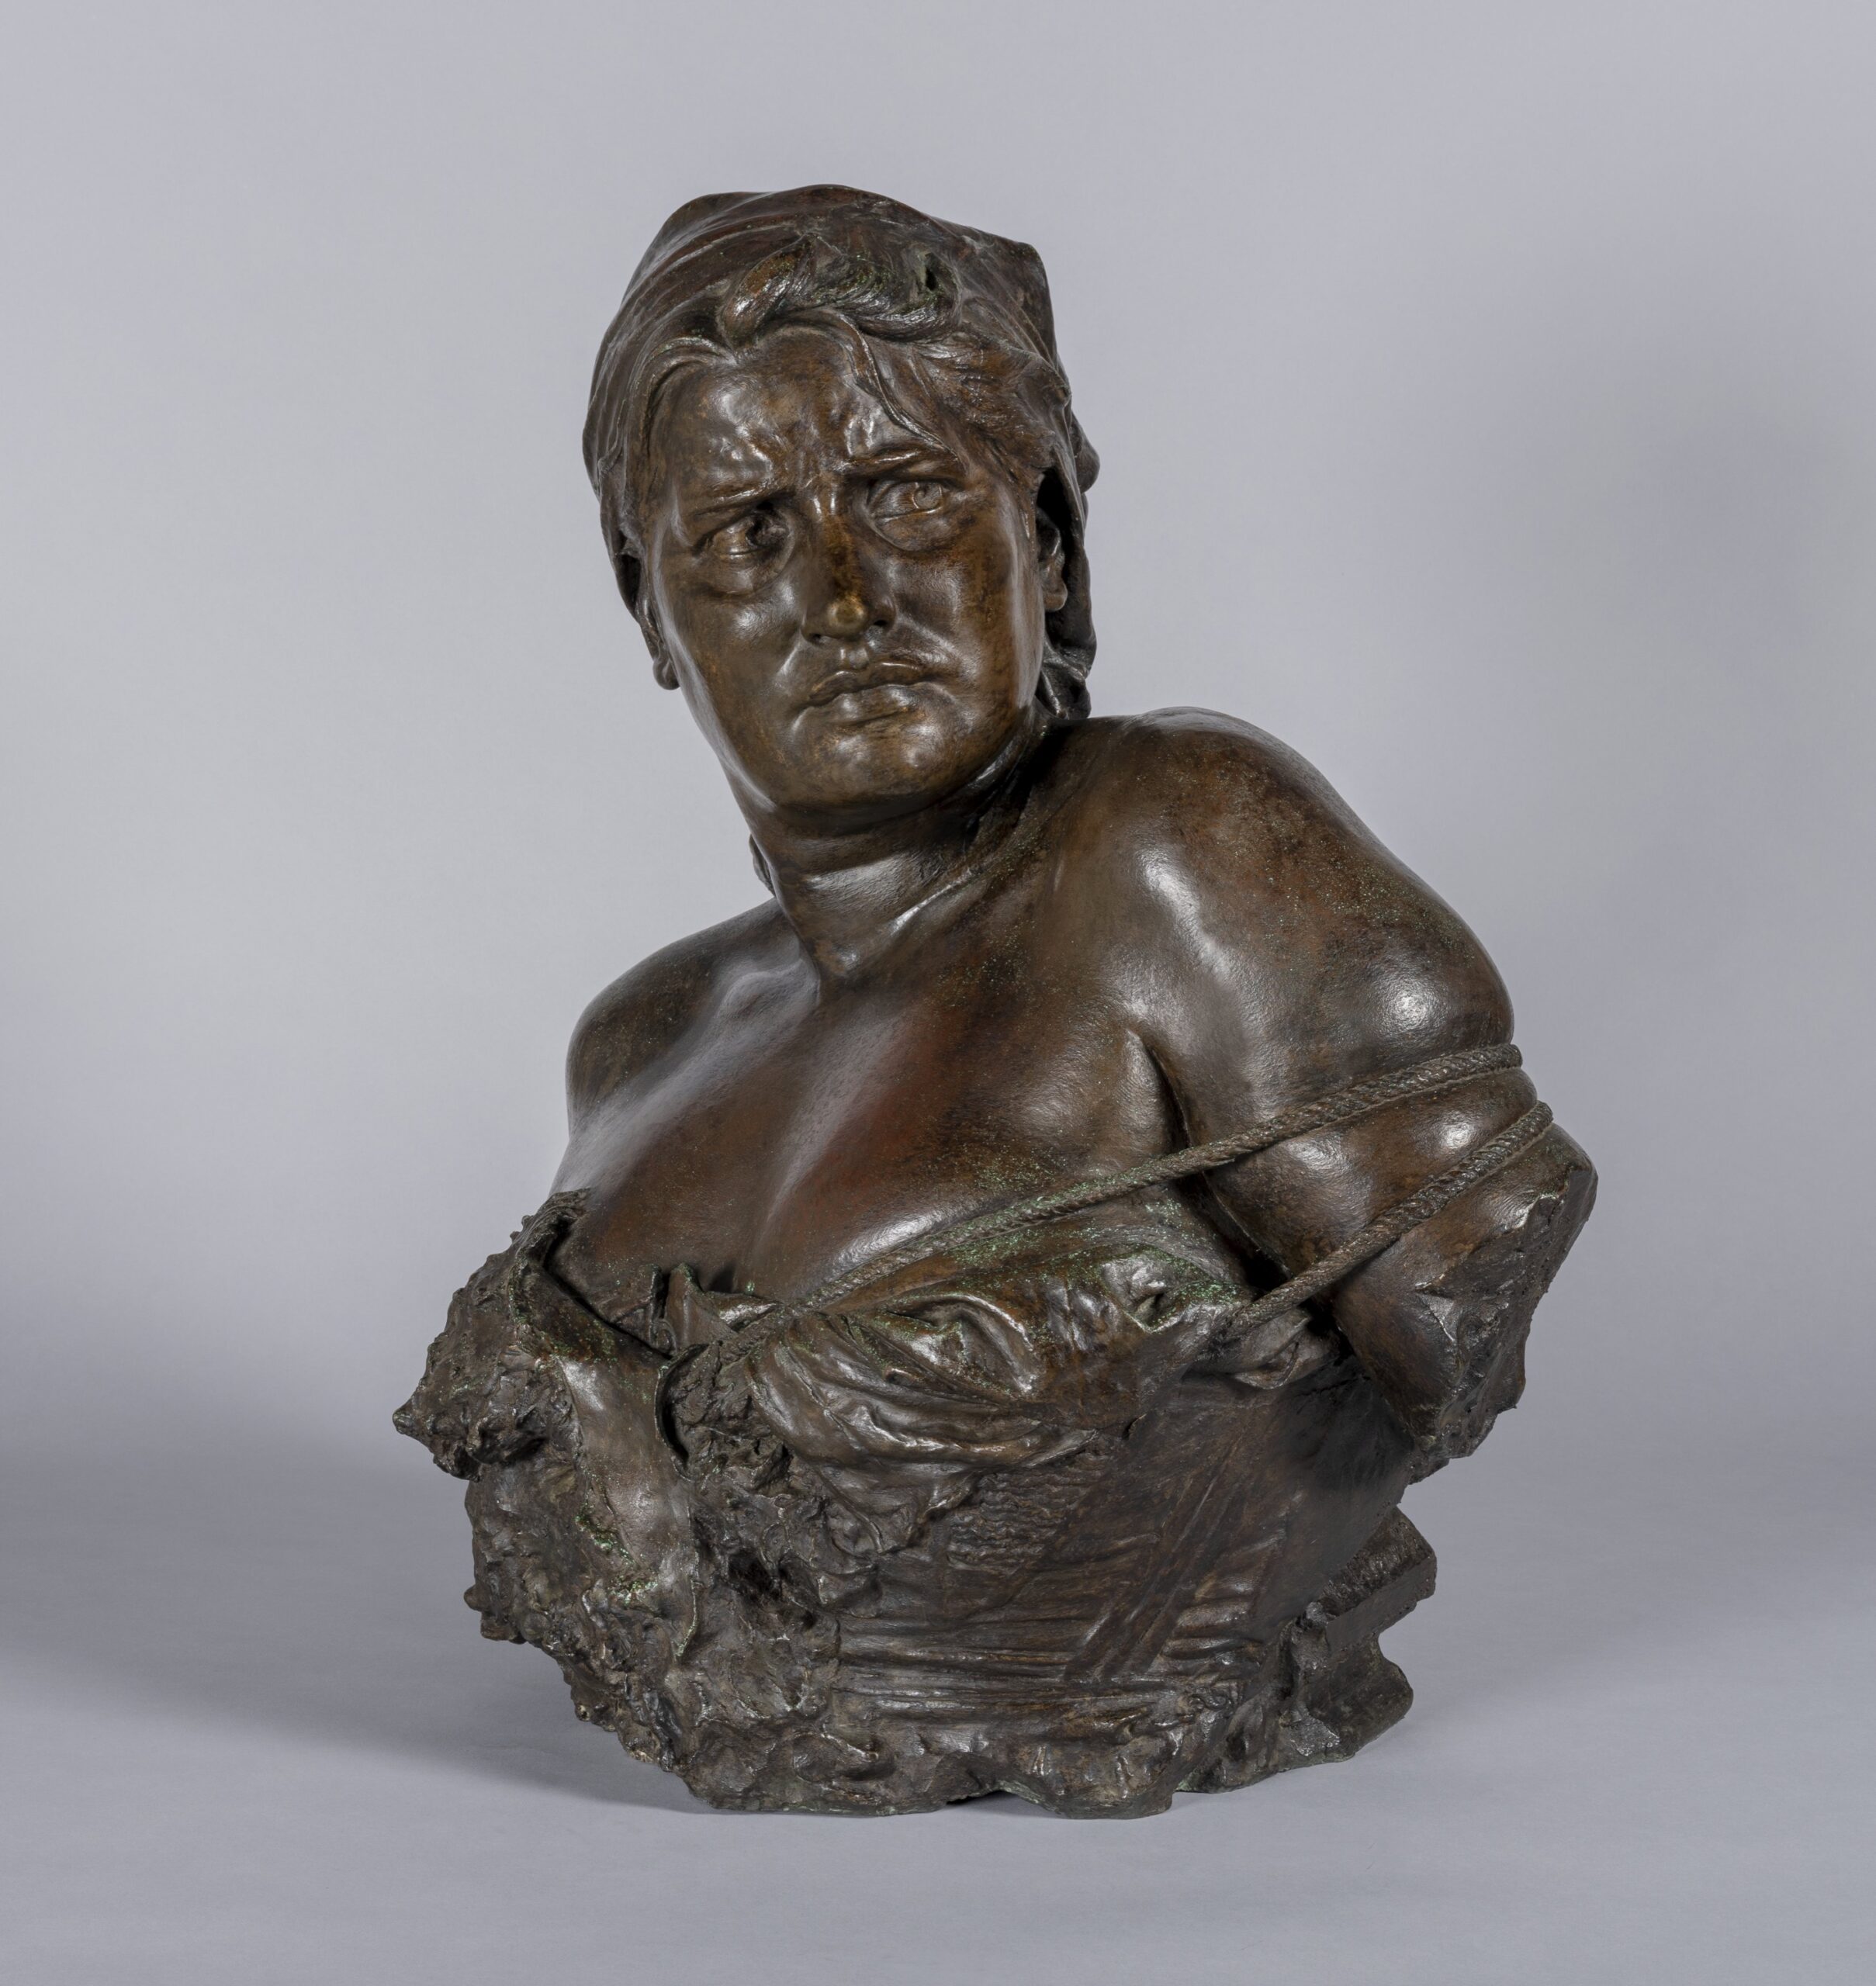 Giacomo Ginotti (1844-1897), La pétroleuse vaincue, 1887. Bronze, 65 x 54 x 34 cm. Paris, musée d’Orsay. Photo service de presse. © Sophie Crépy / musée d’Orsay